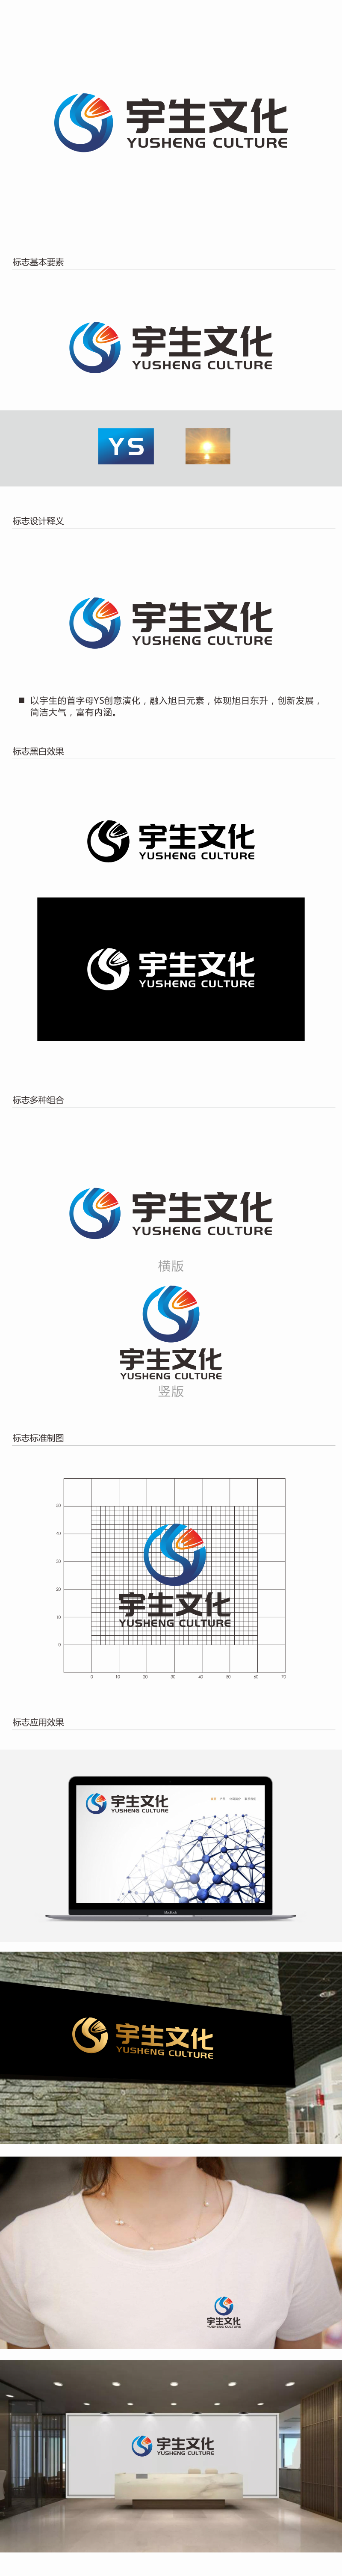 林思源的山东宇生文化股份有限公司logo设计